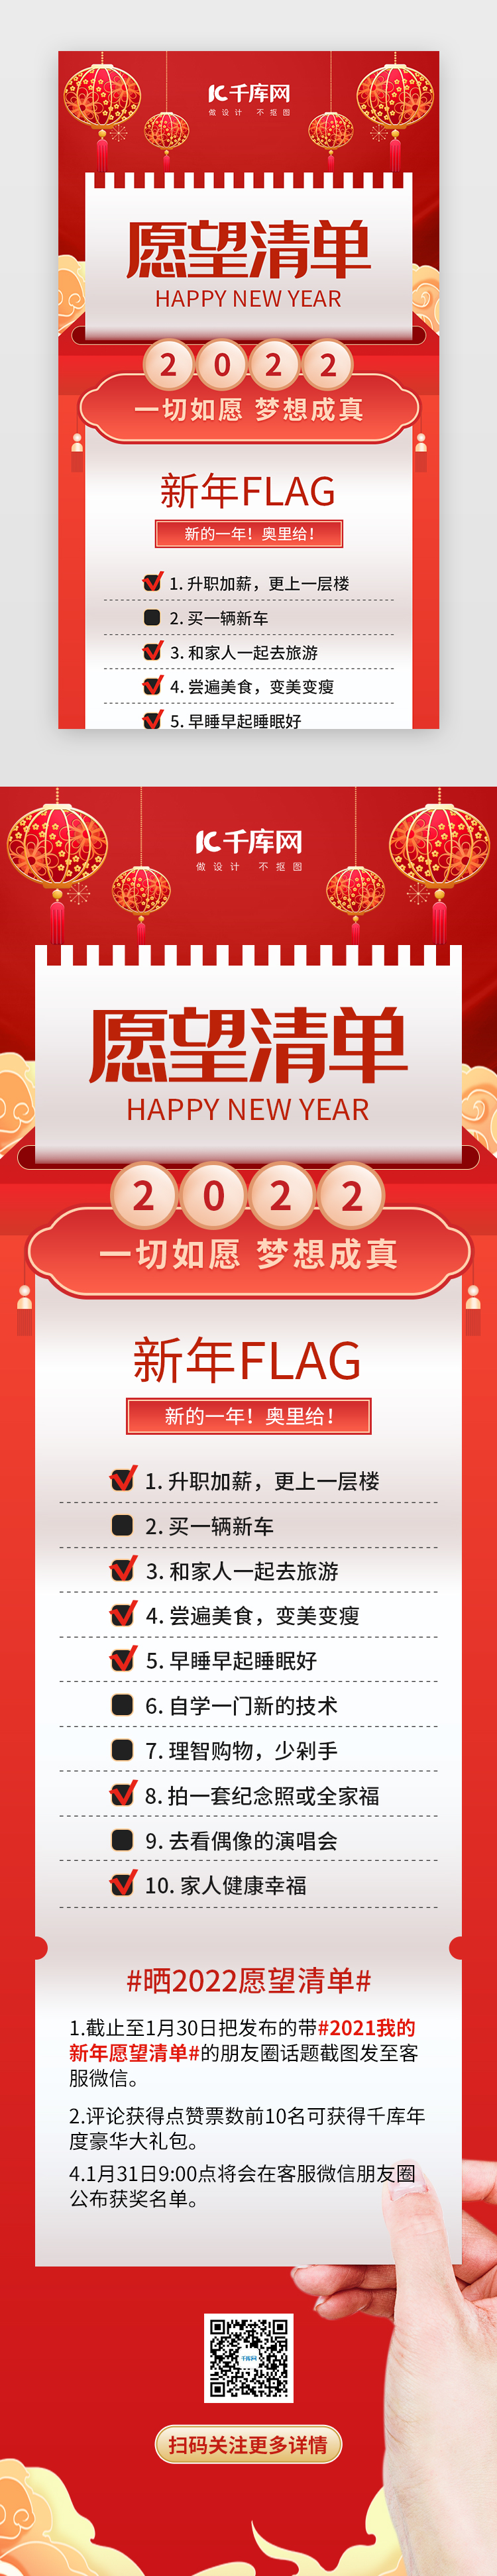 2022新年愿望清单H5创意红色灯笼图片